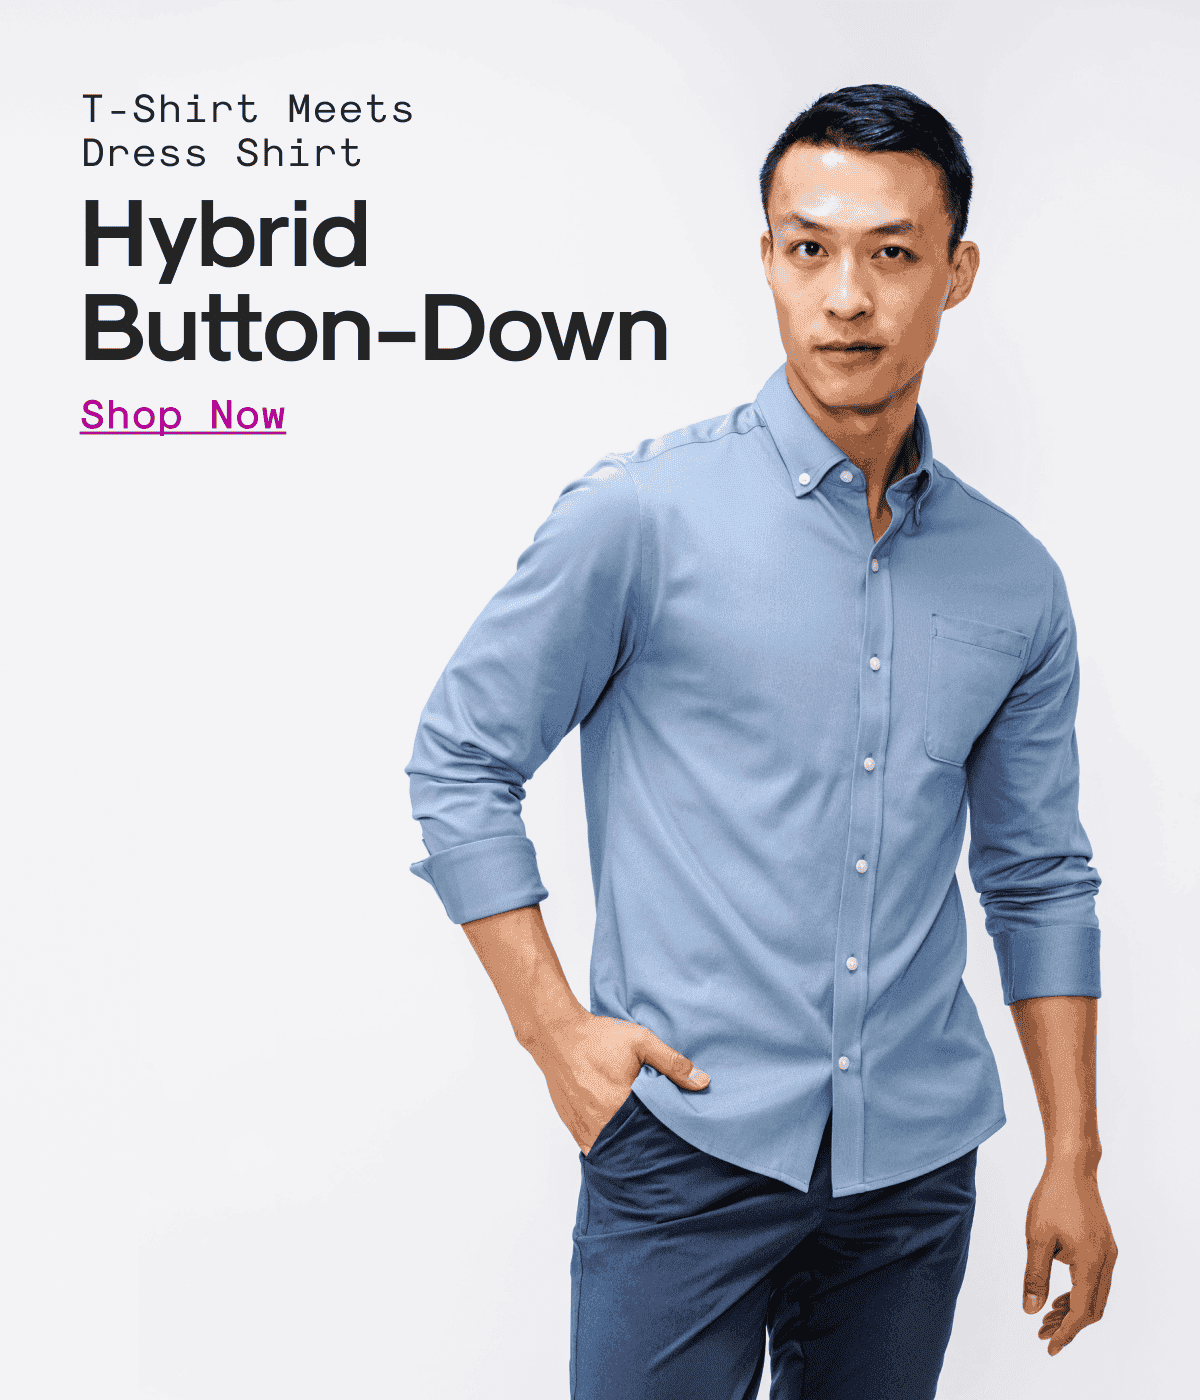 T-Shirt Meets Dress Shirt: Hybrid Button-Down